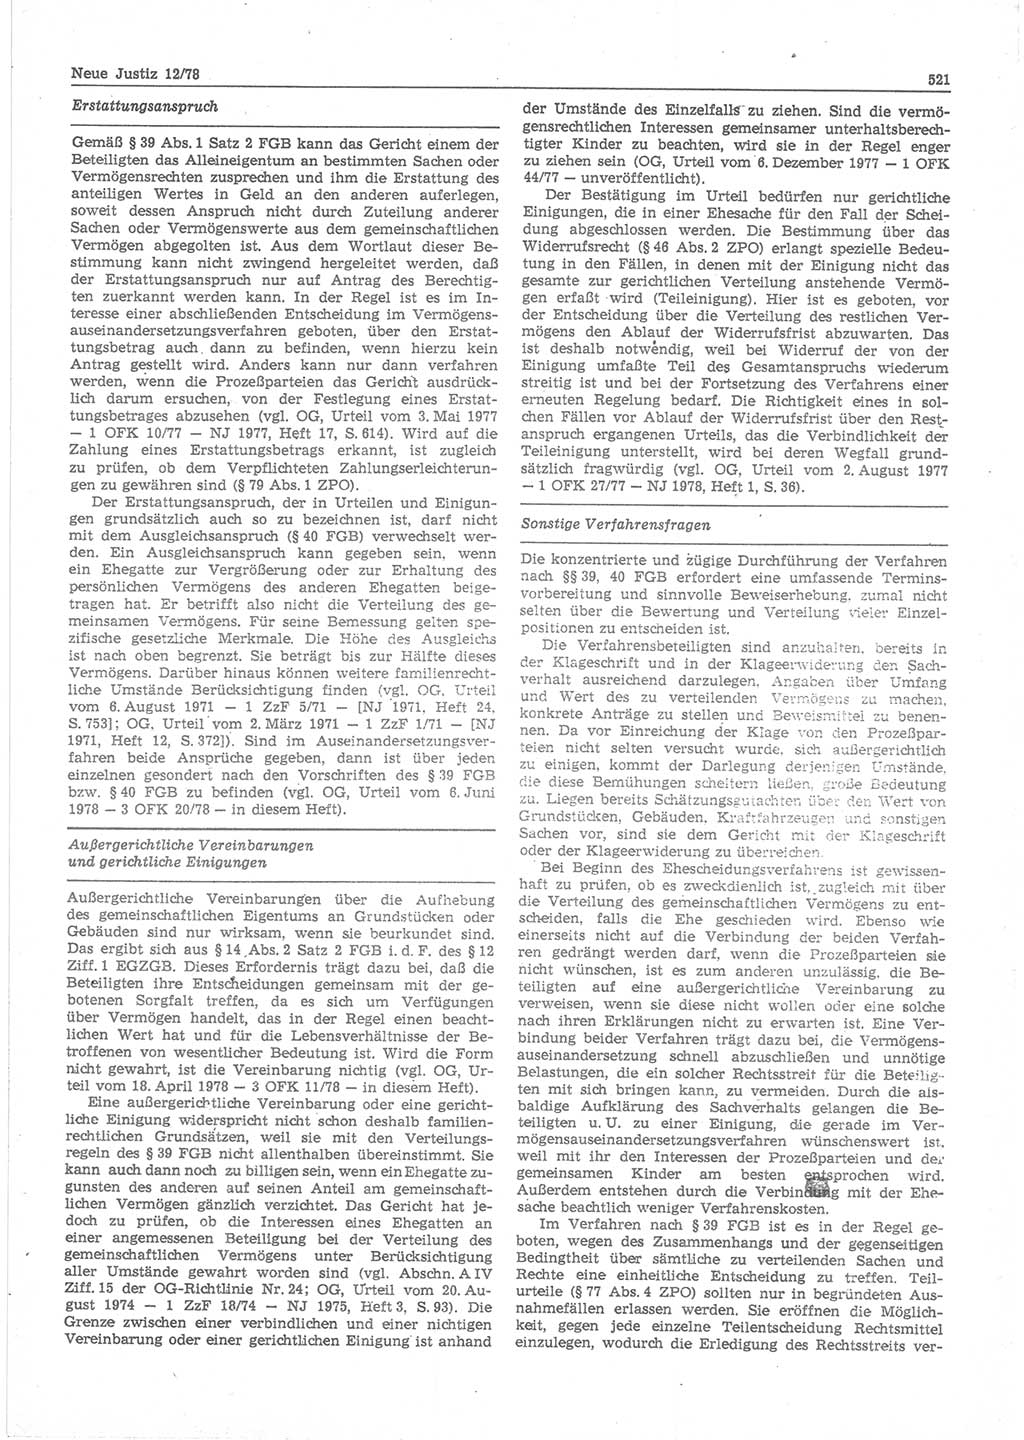 Neue Justiz (NJ), Zeitschrift für sozialistisches Recht und Gesetzlichkeit [Deutsche Demokratische Republik (DDR)], 32. Jahrgang 1978, Seite 521 (NJ DDR 1978, S. 521)